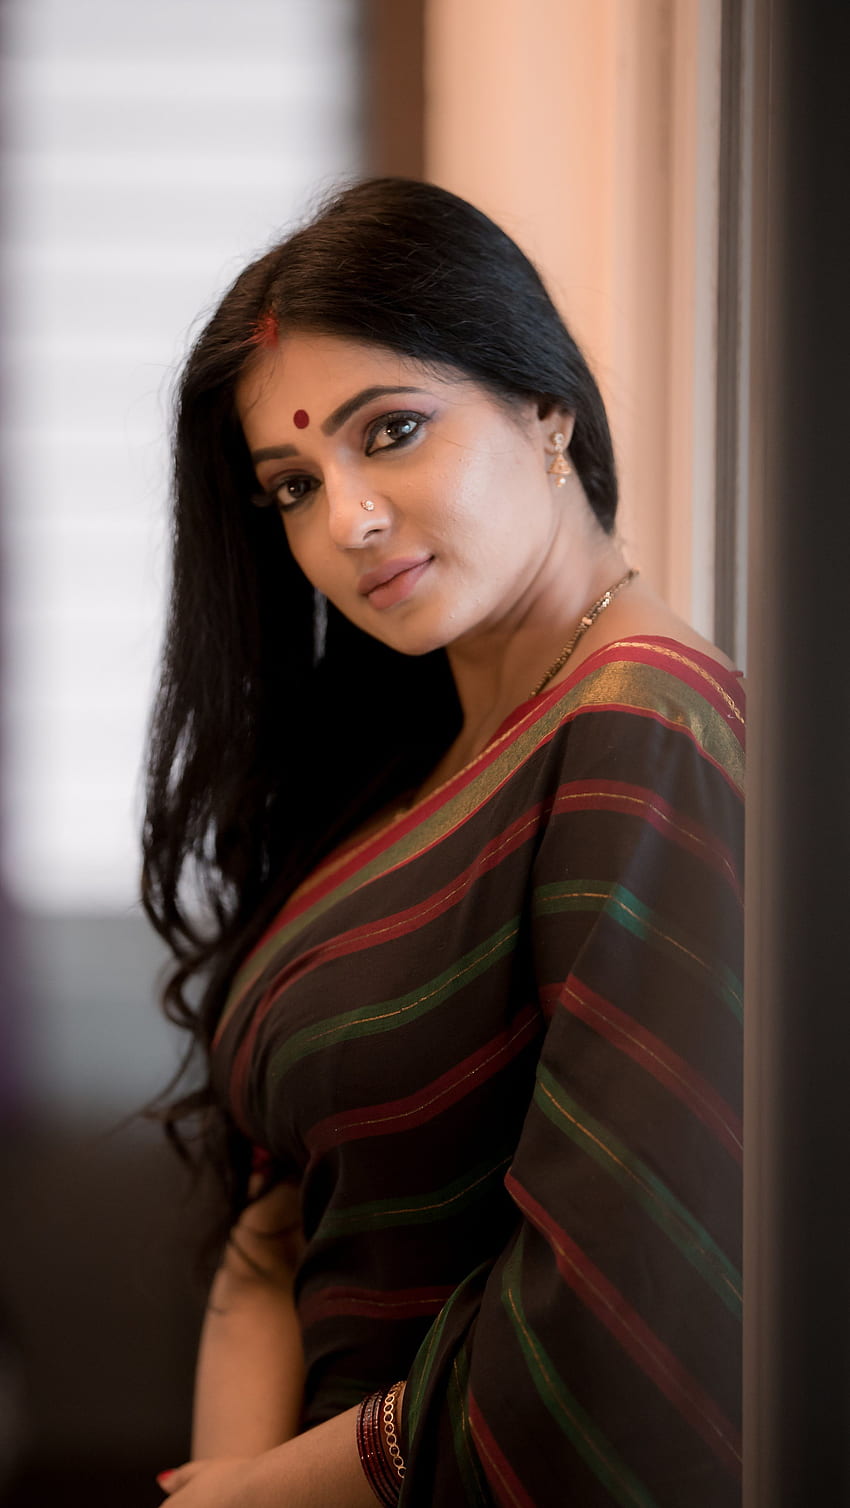 Reshma pasupuleti, pecinta saree, aktris tamil wallpaper ponsel HD